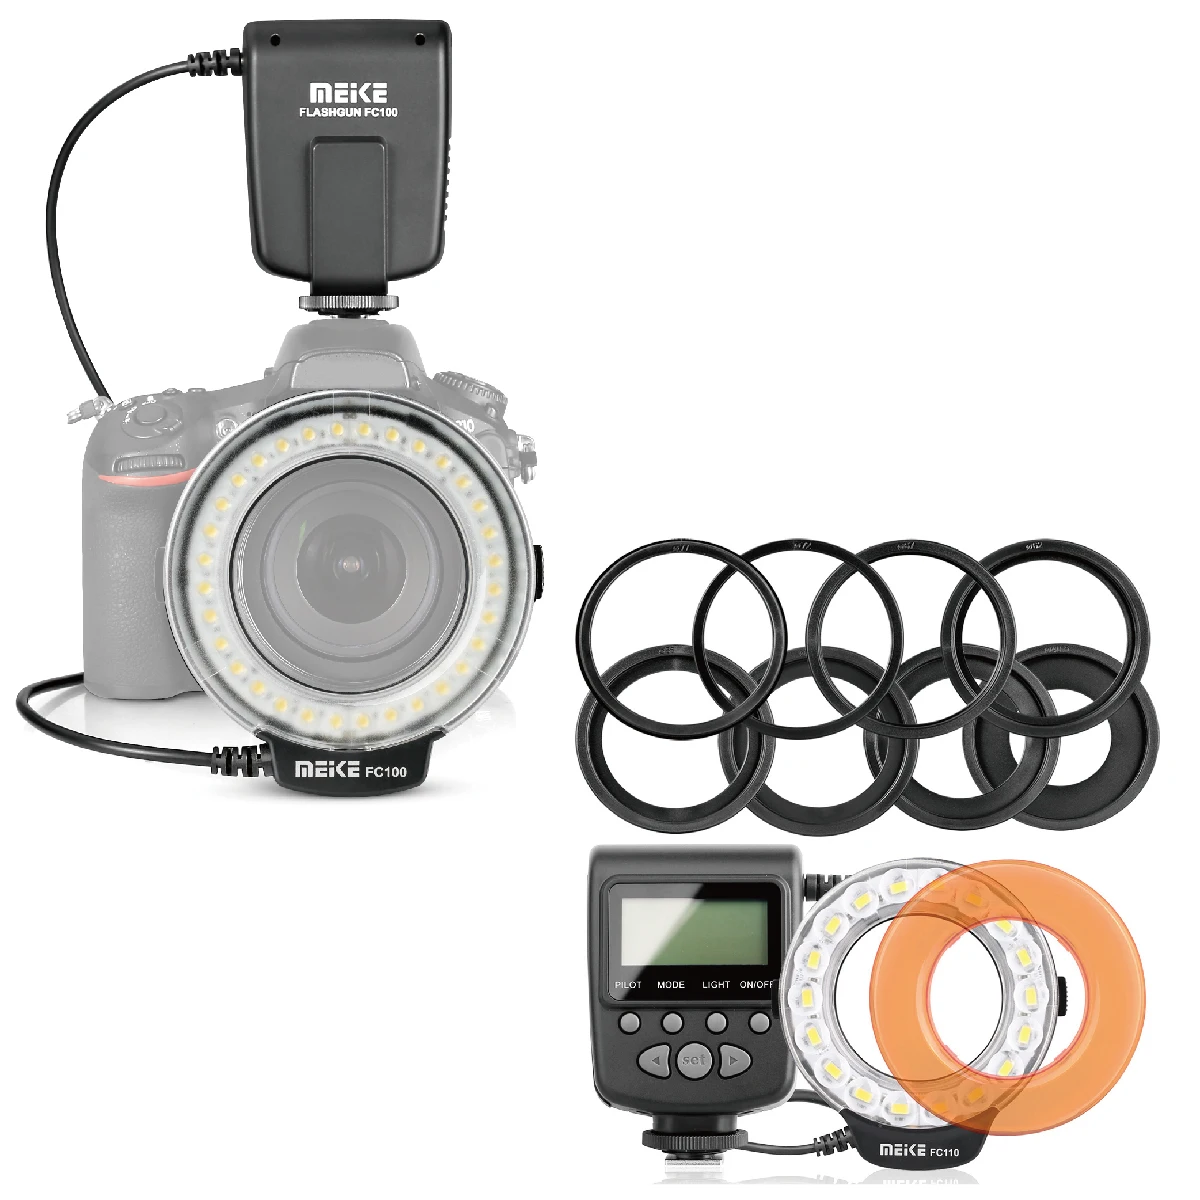 

Meike FC-100 FC100 ручная светодиодная Кольцевая вспышка для макросъемки с 7 переходными кольцами для цифровых зеркальных камер Canon Nikon Olympus Pentax